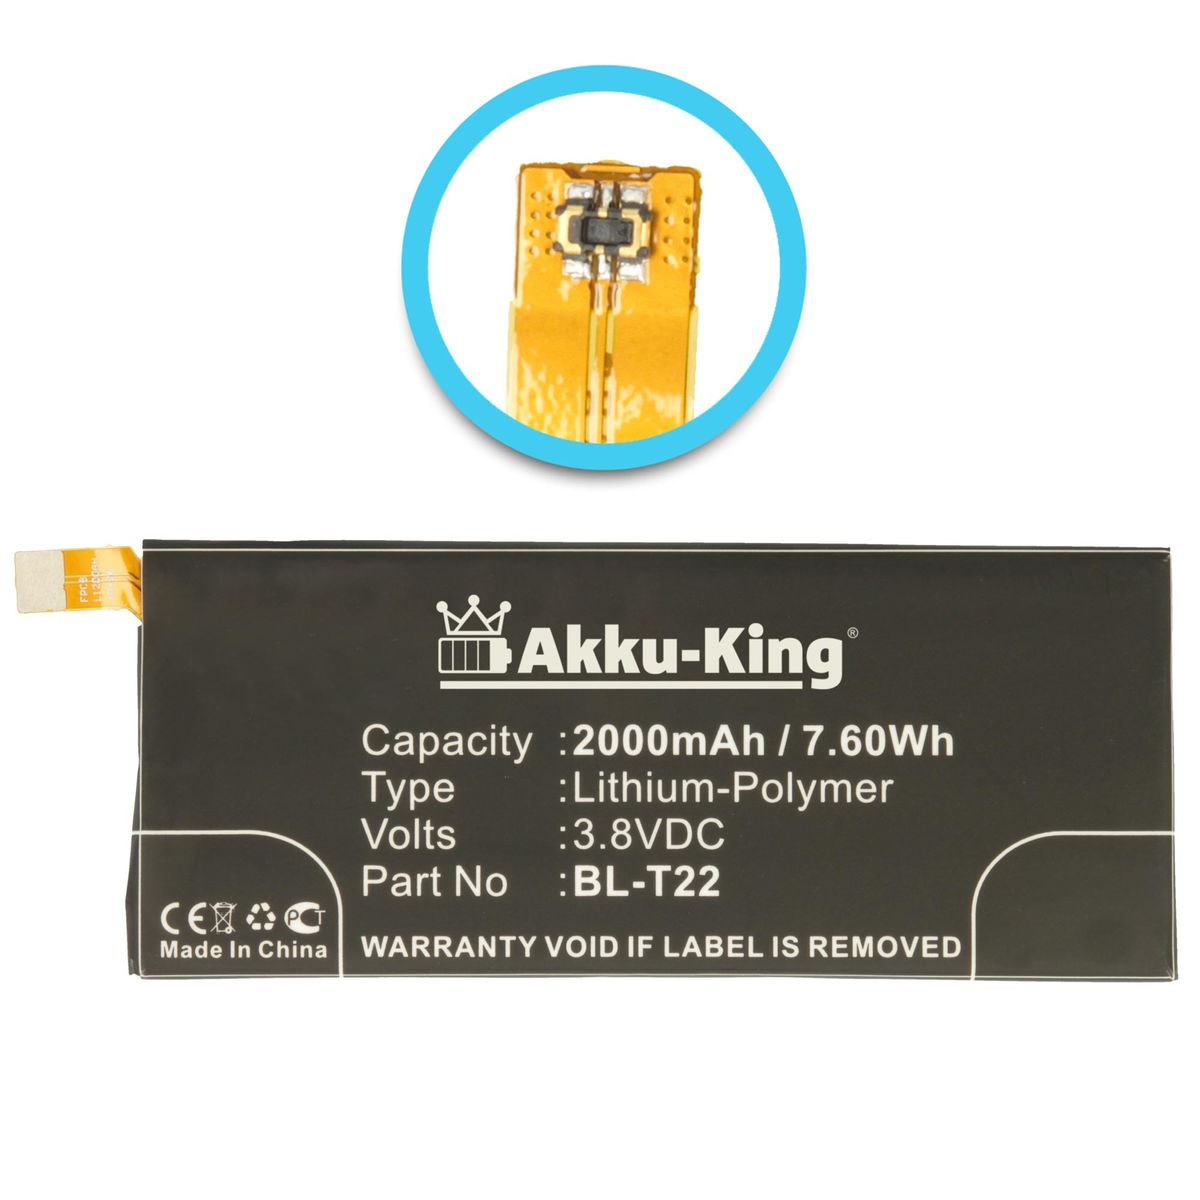 AKKU-KING Akku kompatibel BL-T22 LG mit 3.8 Handy-Akku, Li-Polymer 2000mAh Volt